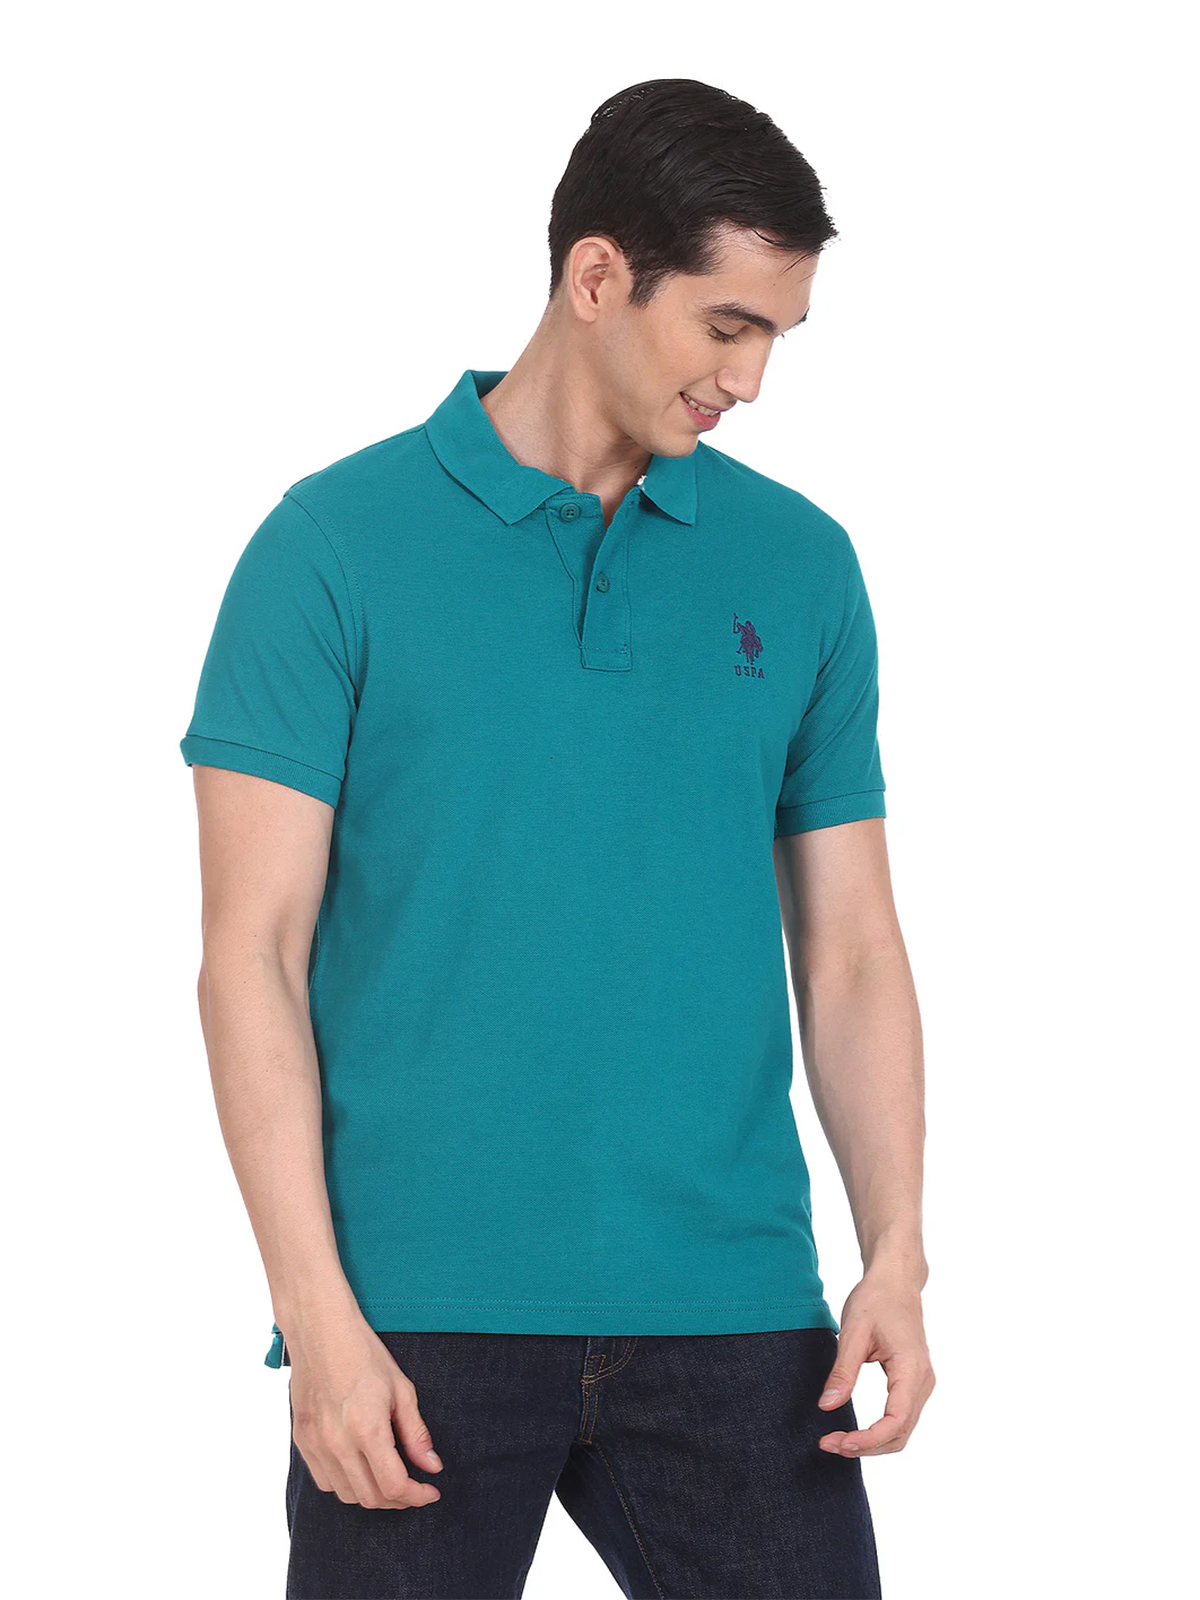 U S POLO ASSN plain rama blue cotton t shirt for men - G3-MTS14973